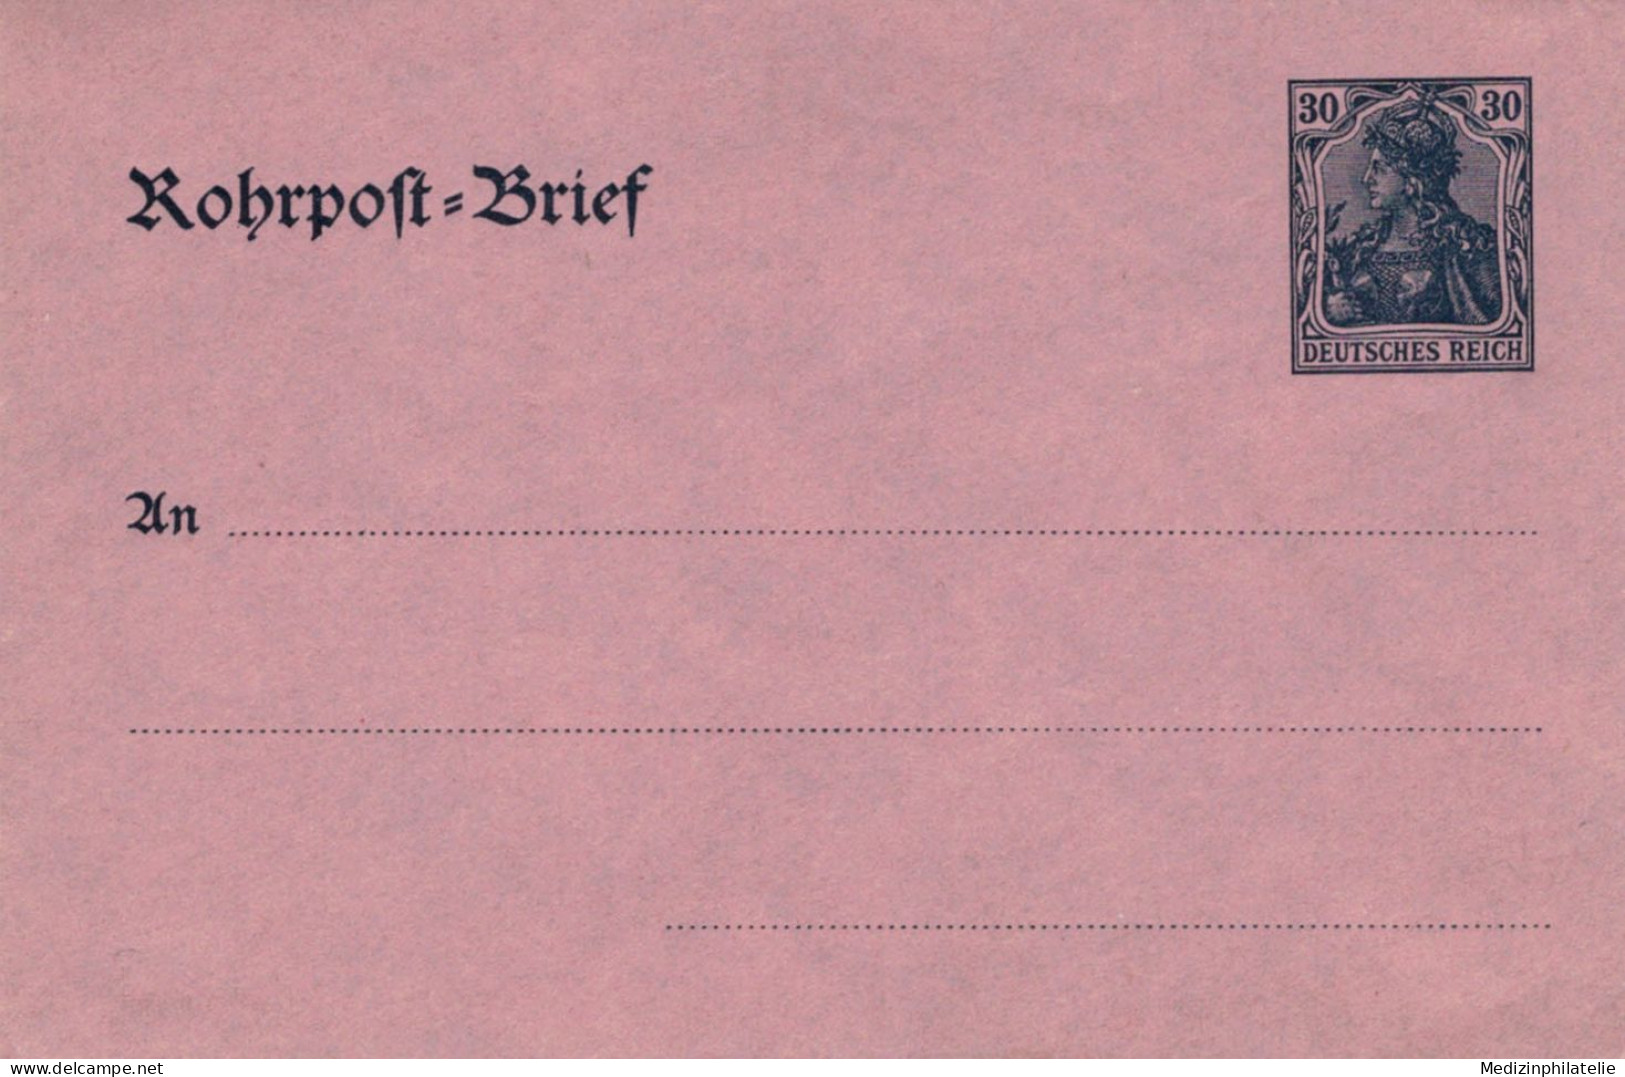 Rohrpost-Brief 30 Pf. Germania Glattes Papier - Ungebraucht - Briefe